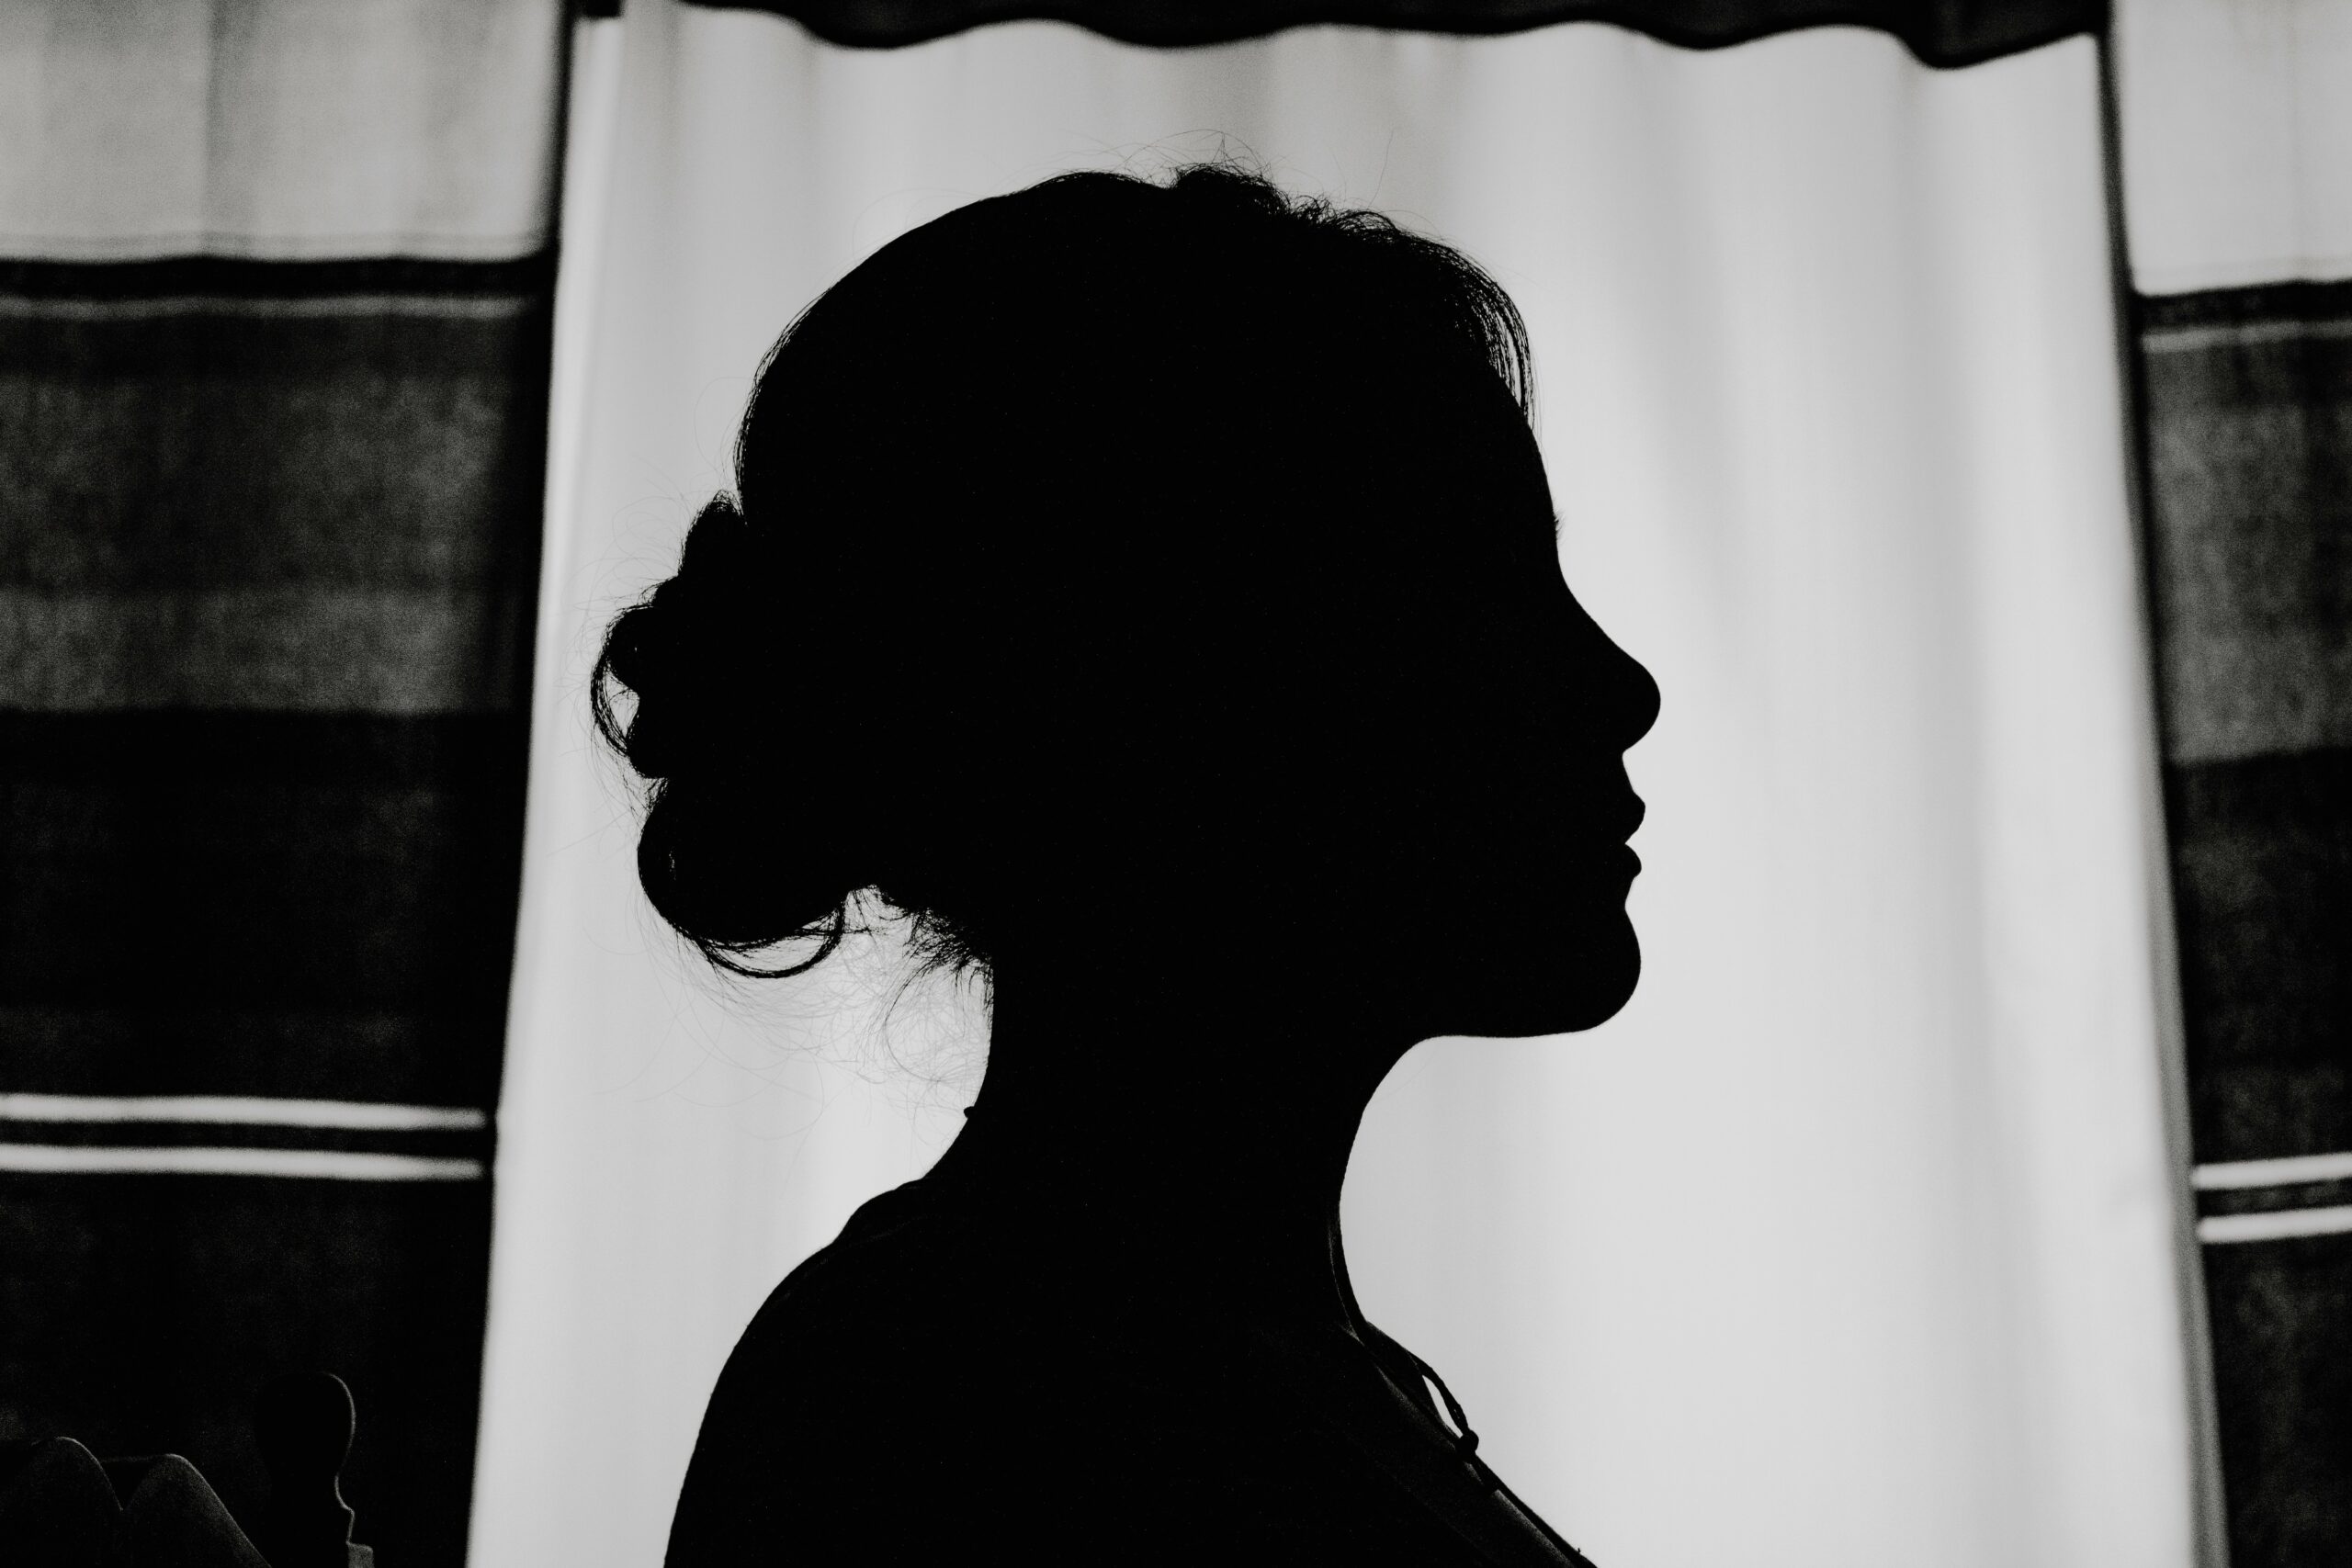 Silhouette einer Frau im schwarz-weiß Kontrast